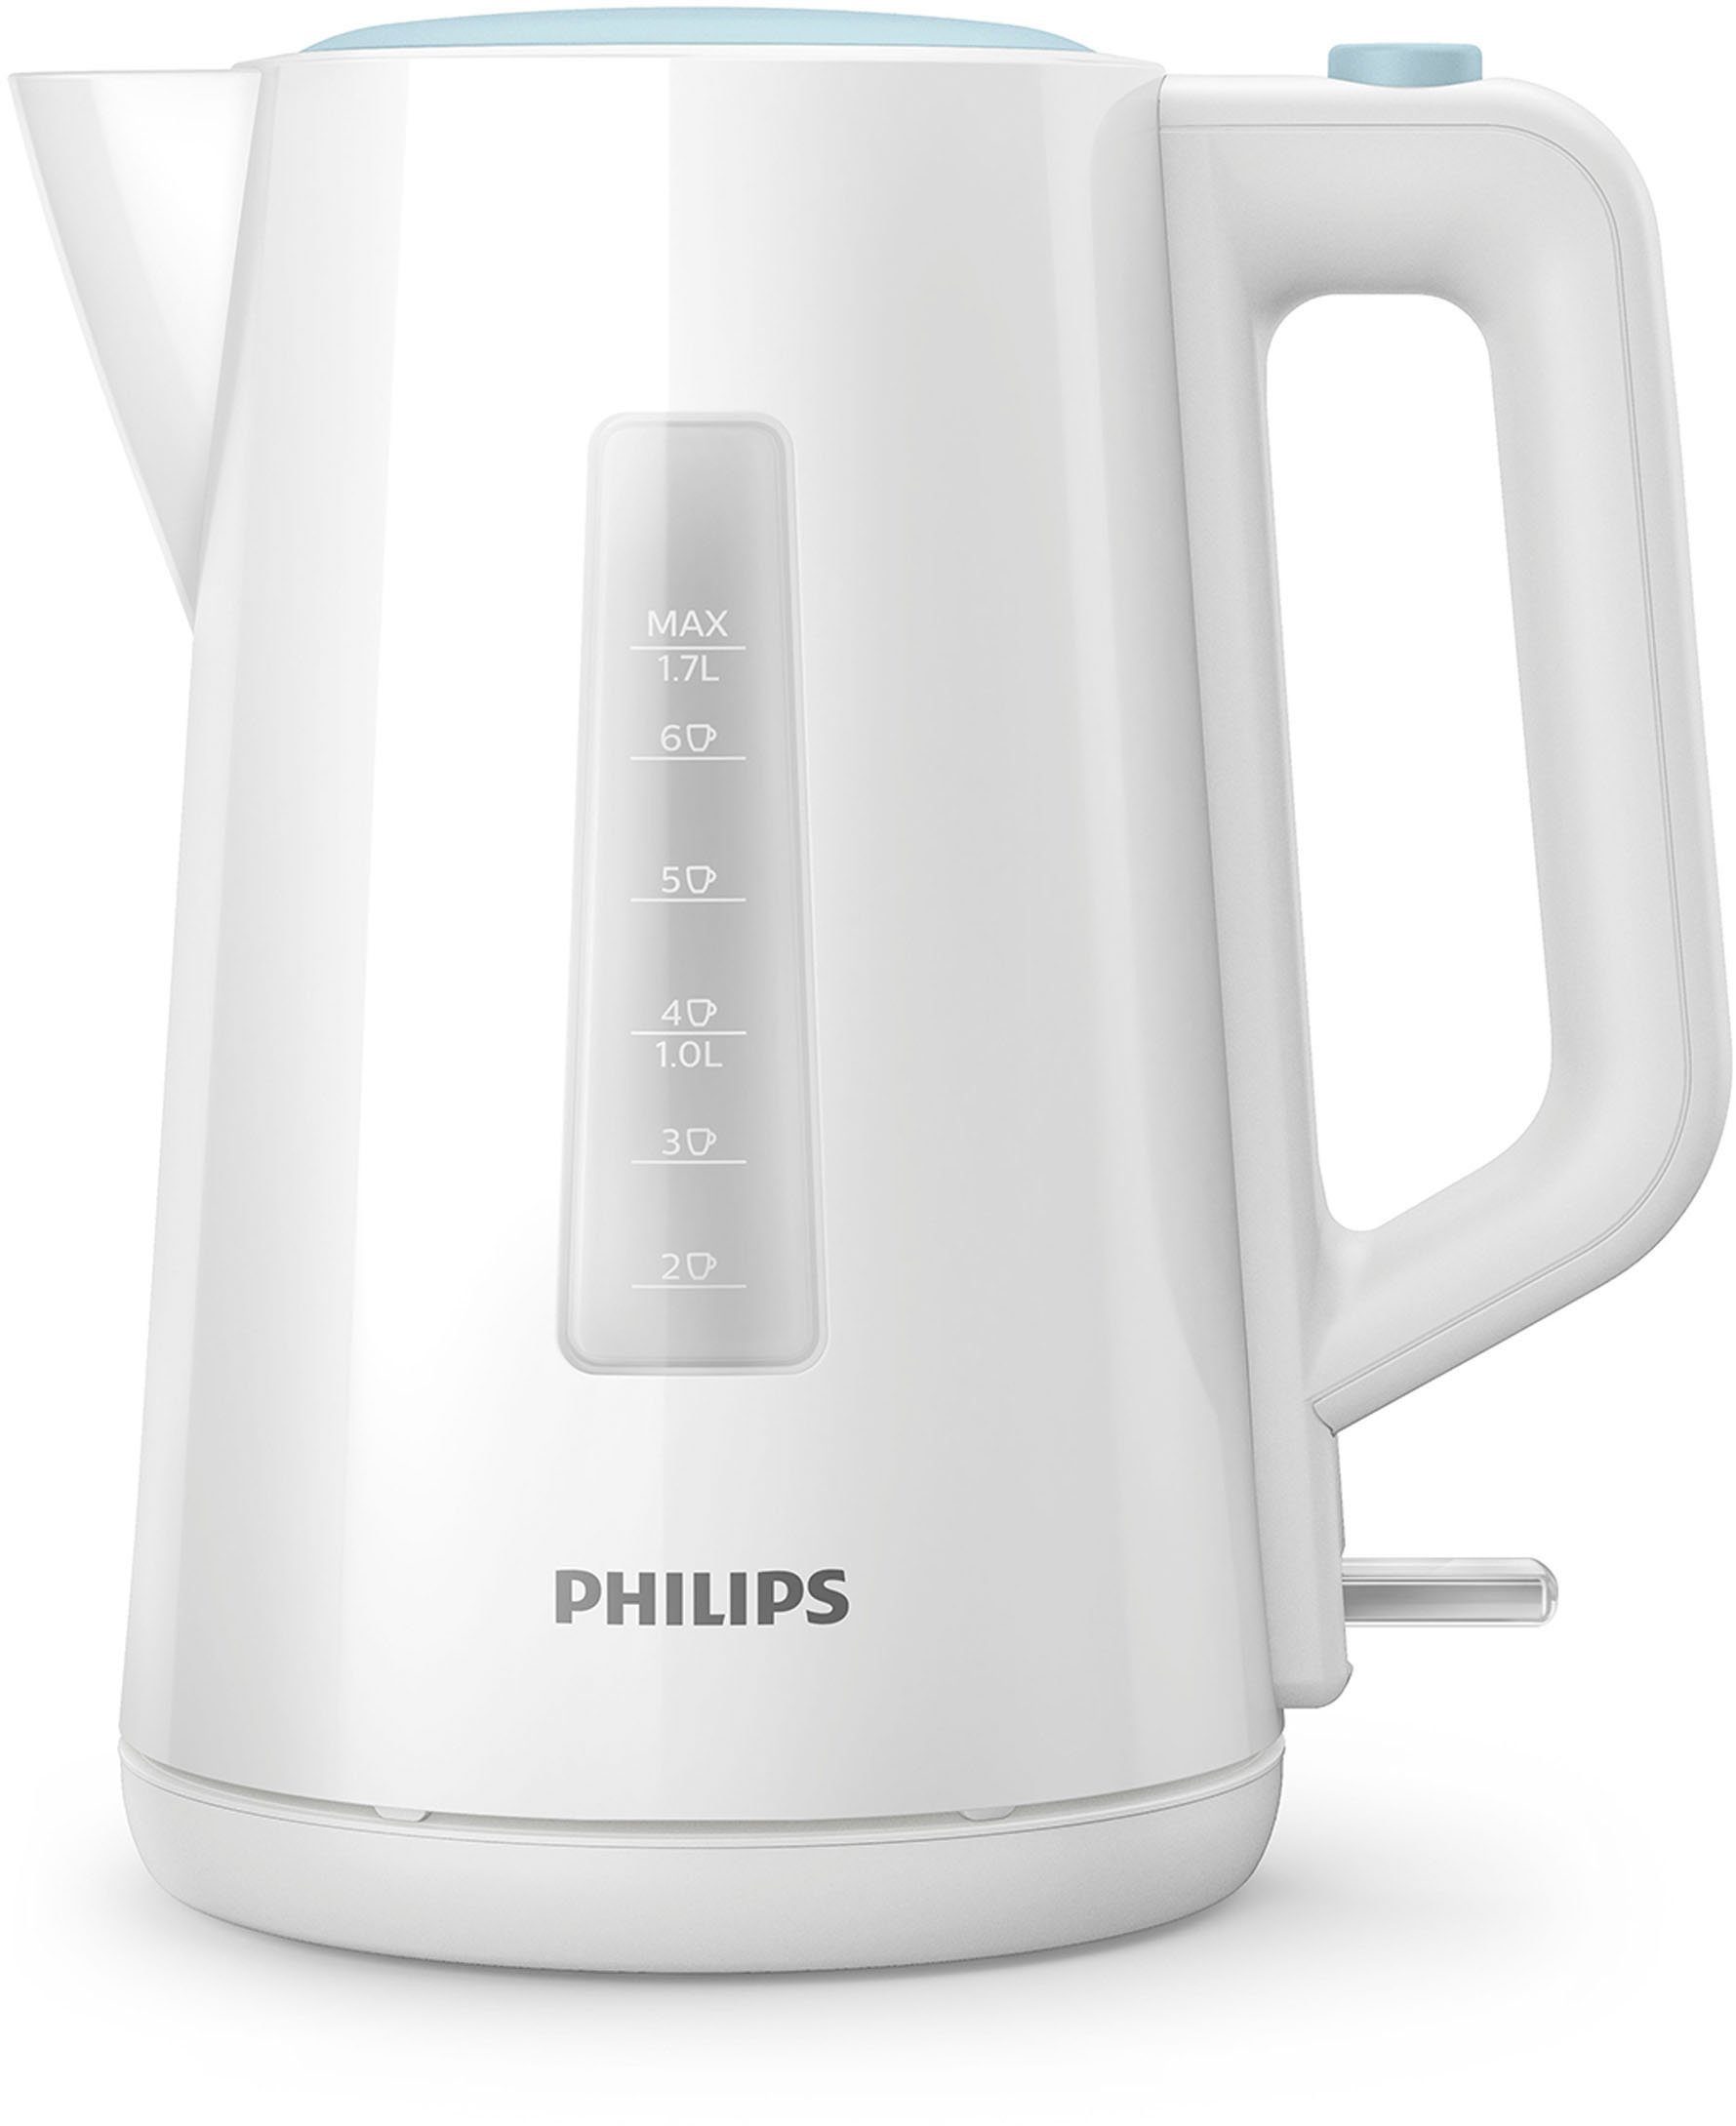 Wasserkocher l, HD9318/00, Philips weiß 2200 W, 1,7 Series 3000